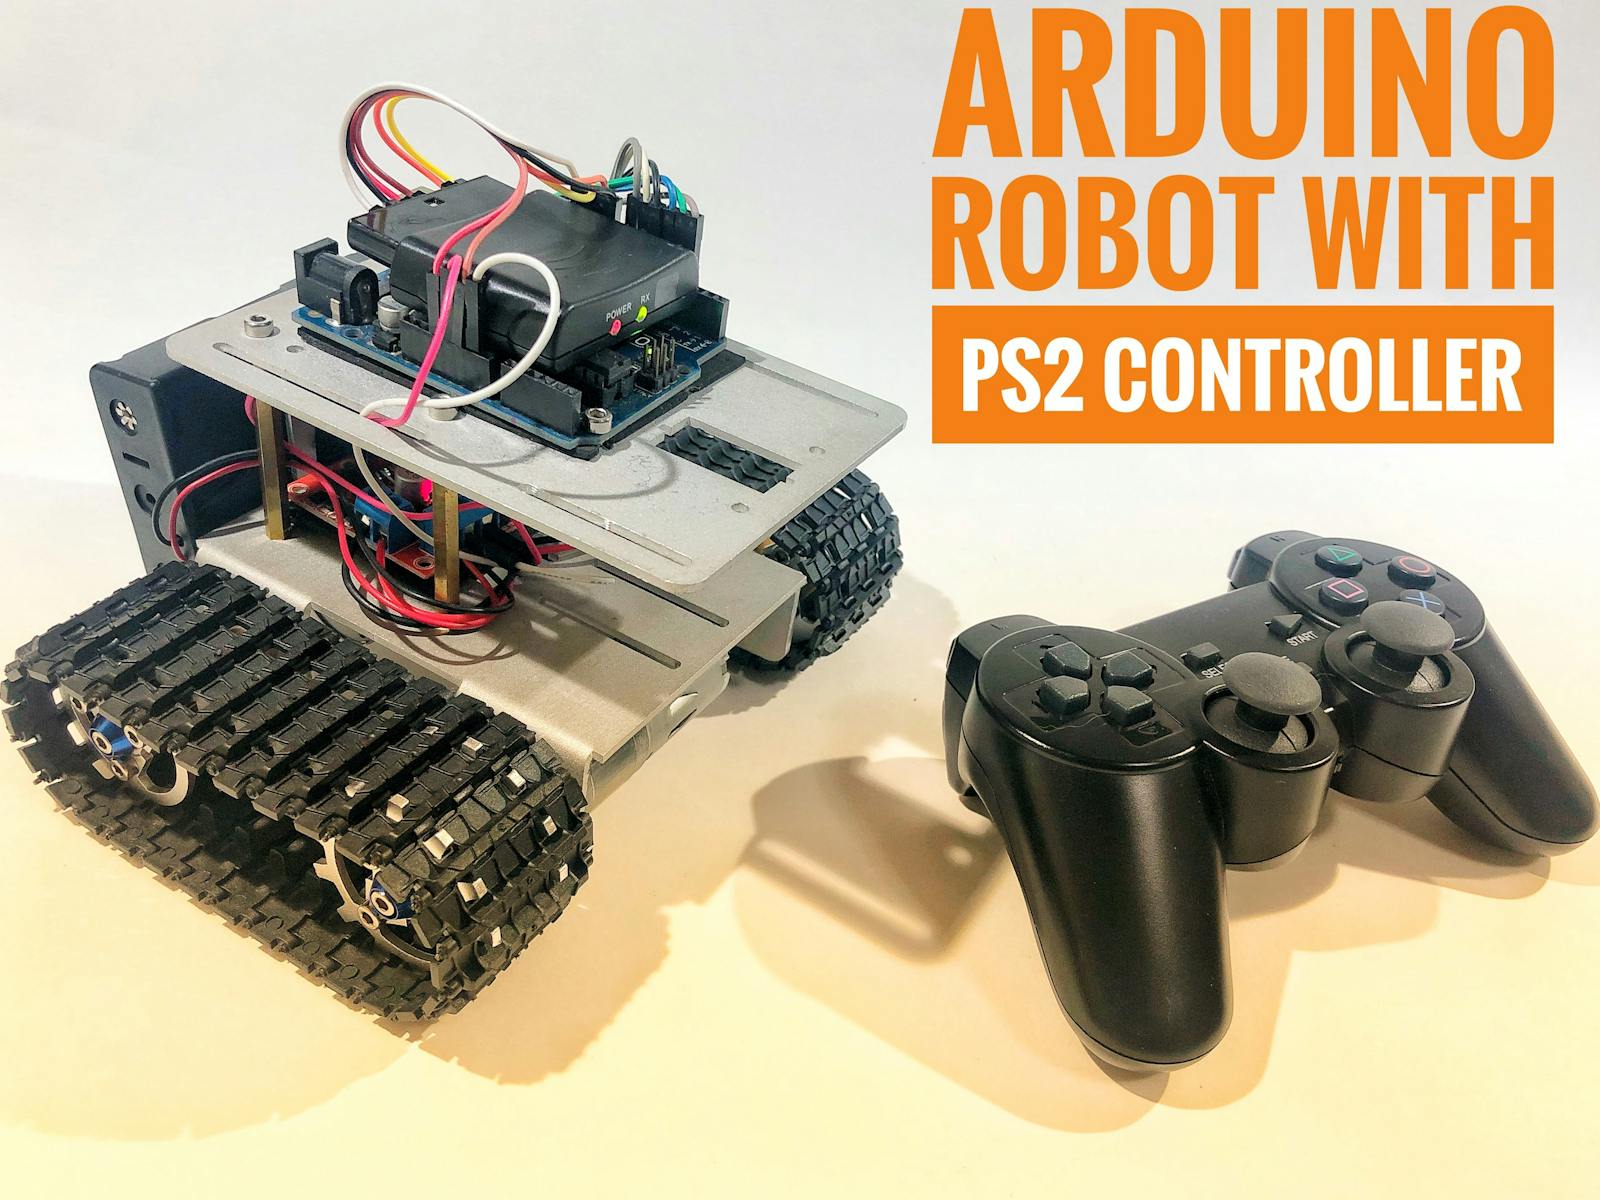 Fakultet peregrination Trække på Arduino Robot With PS2 Controller (PlayStation 2 Joystick) - Hackster.io